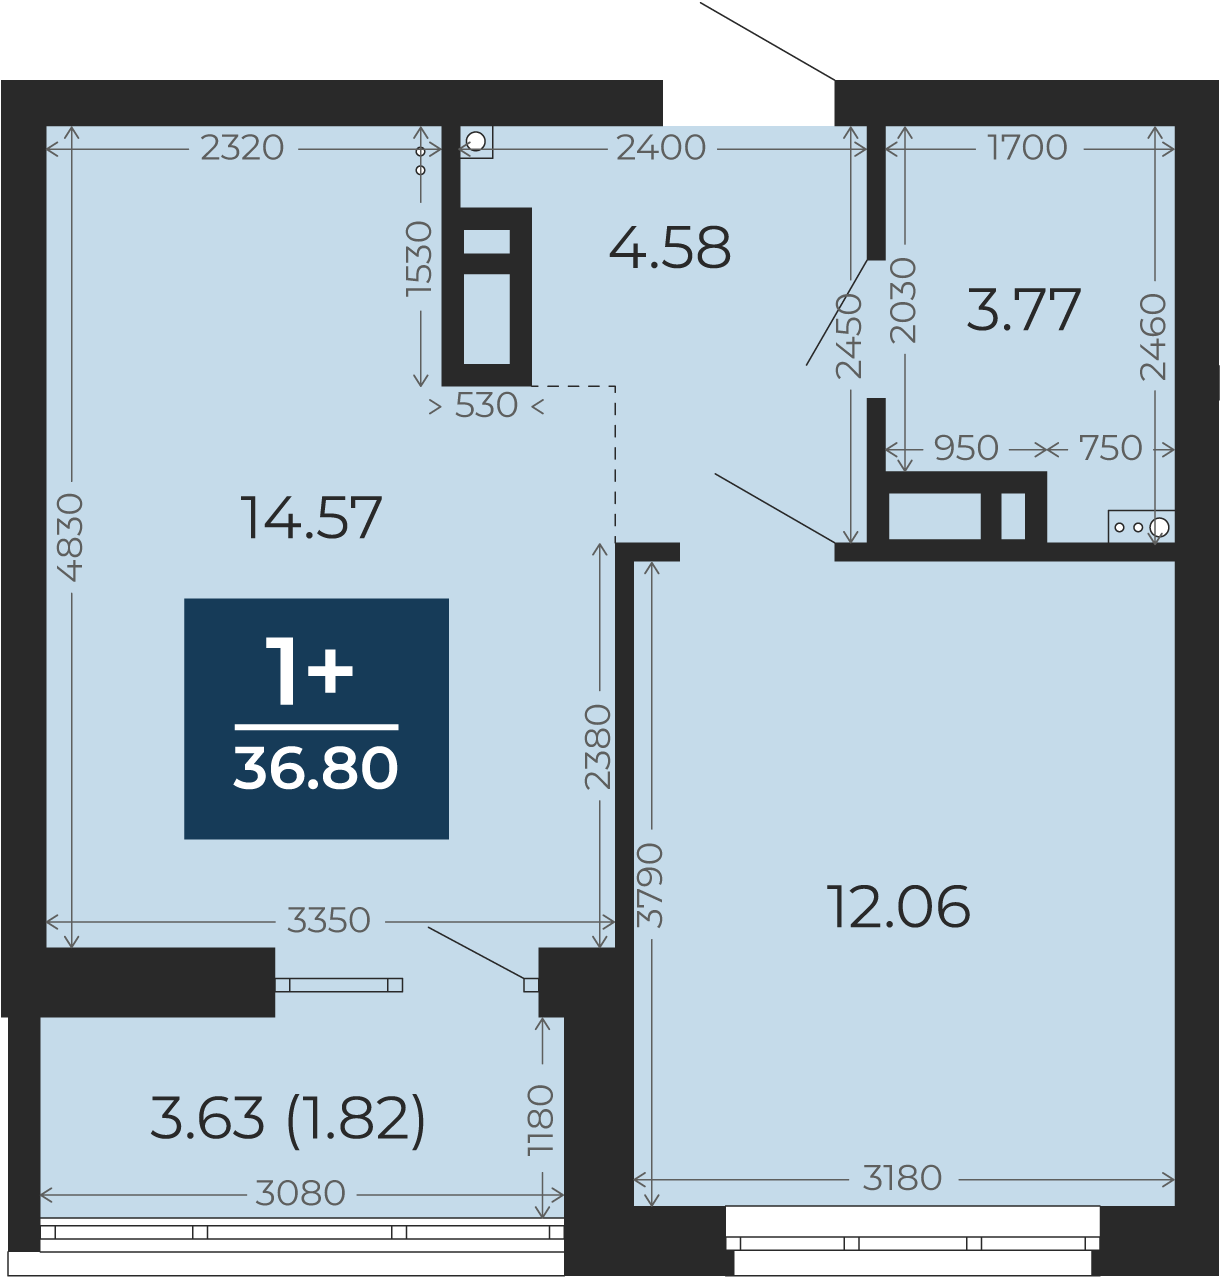 Квартира № 417, 1-комнатная, 36.8 кв. м, 13 этаж